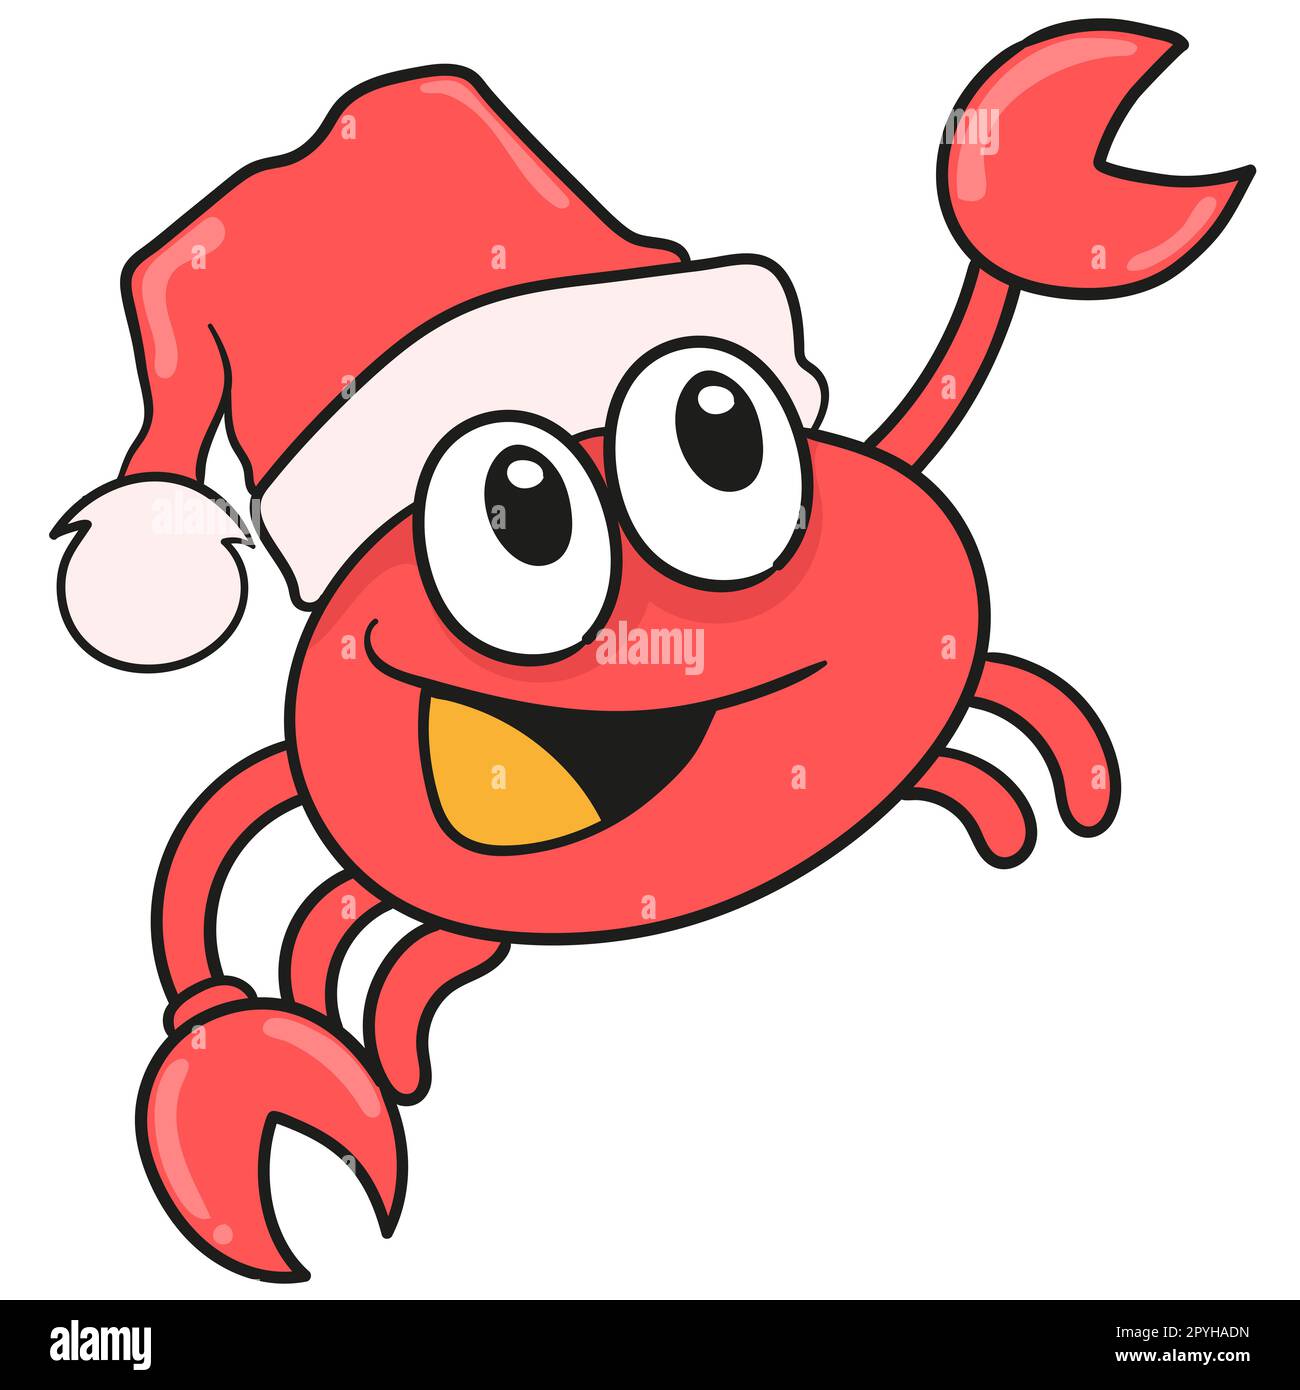 crab celebrating christmas wearing santa hat. doodle icon image Stock Photo